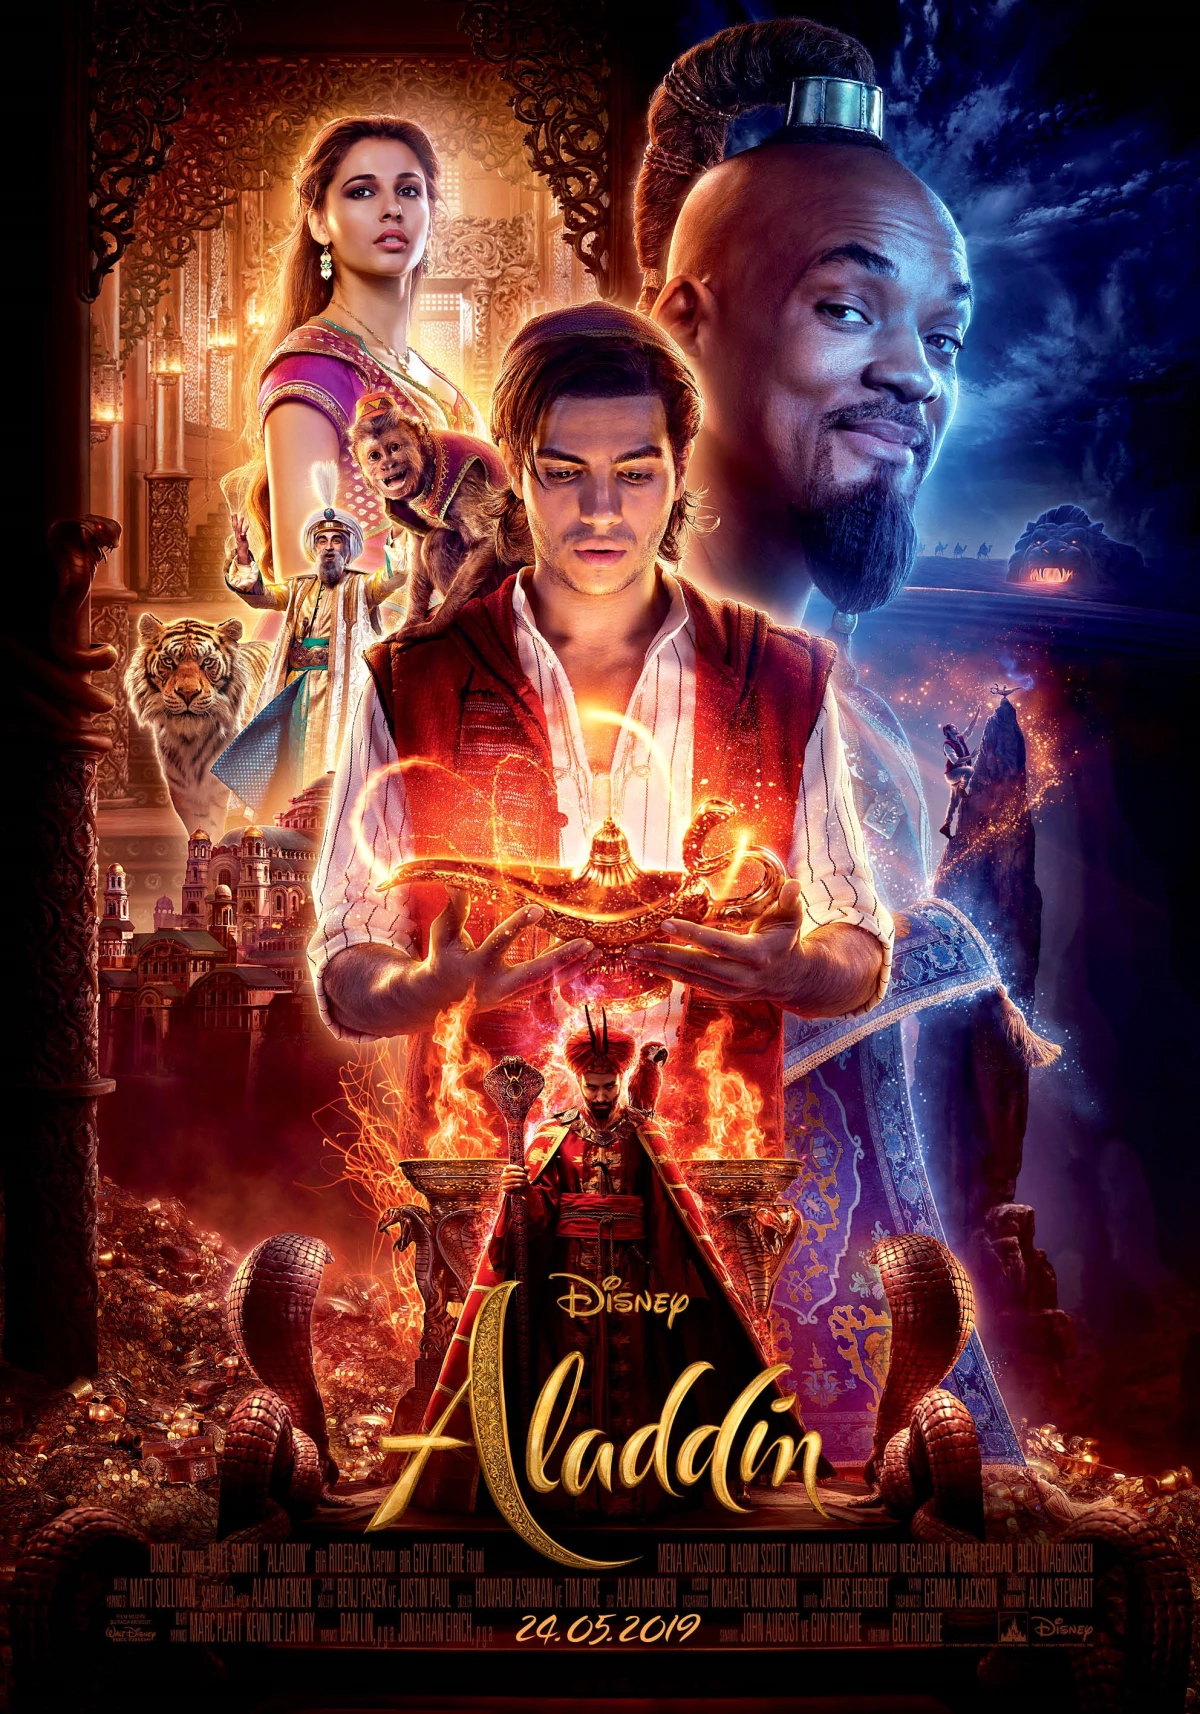 Aladdin\'in Oscar® ve Grammy® Ödüllü "A Whole New World" Şarkısını Seslendirdiler